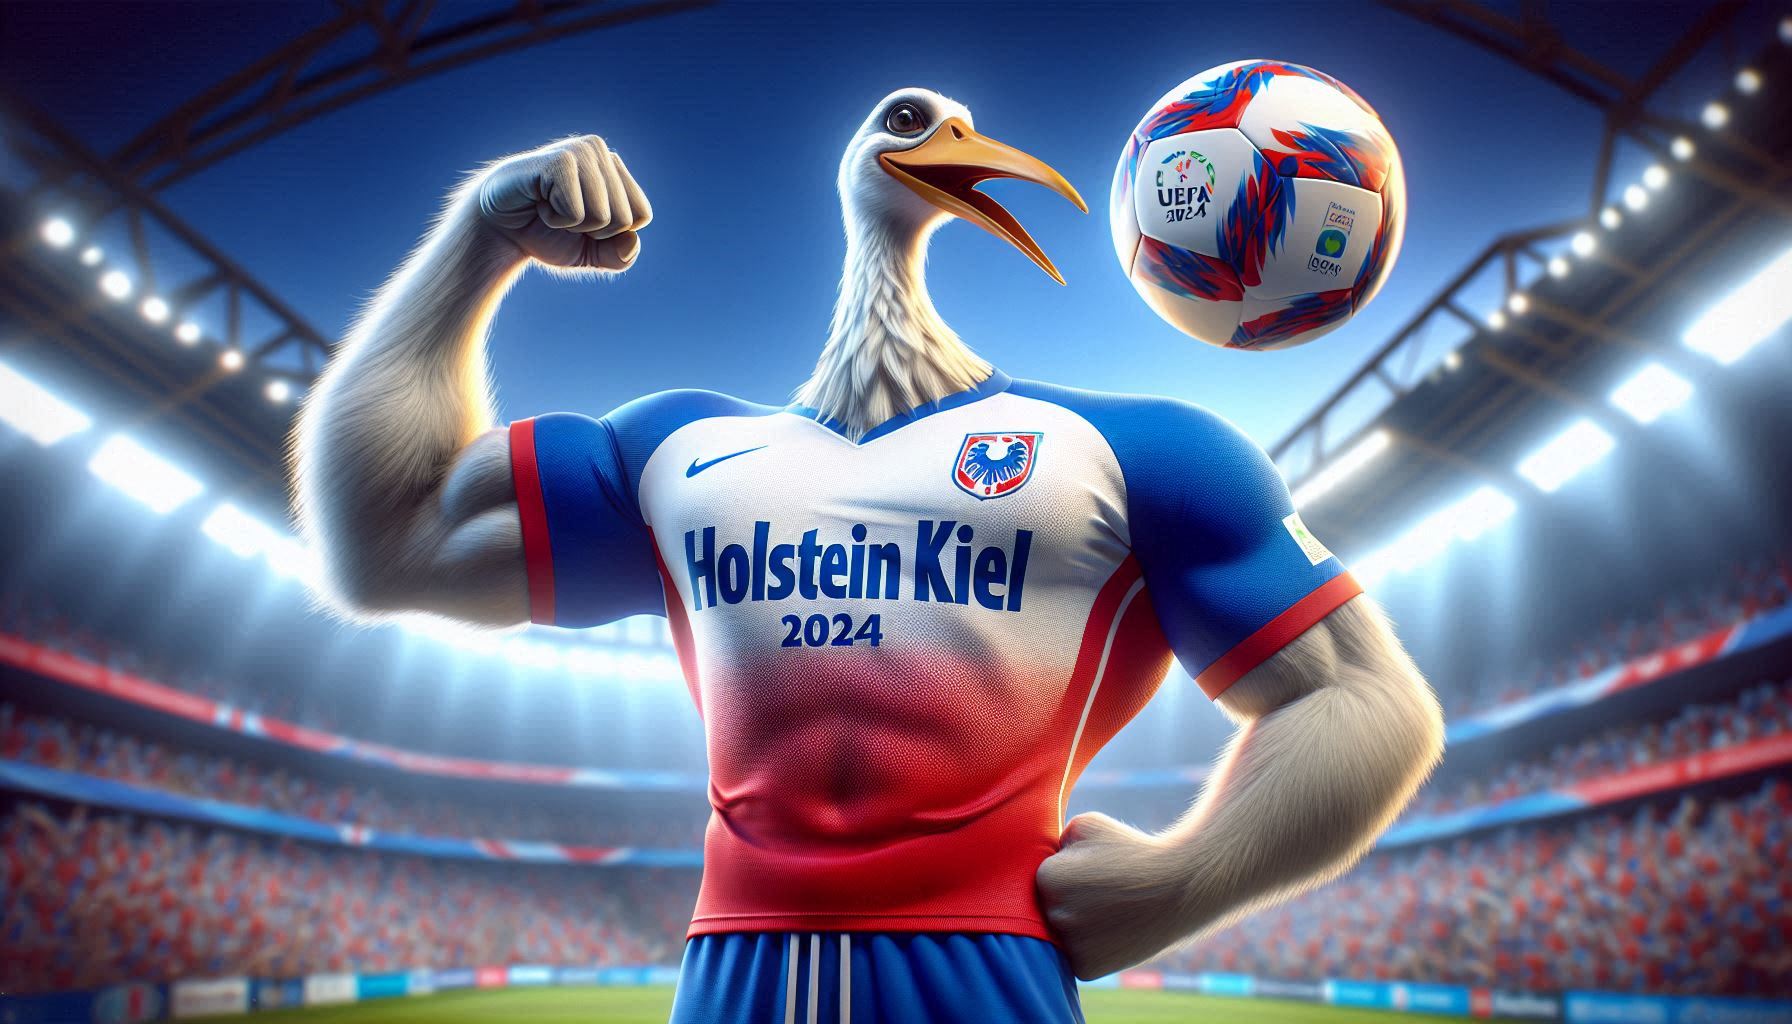 Fussball UEFA Euro 2024: Beim Deutschlandspiel Unlimited Flat bei congstar und Telekom